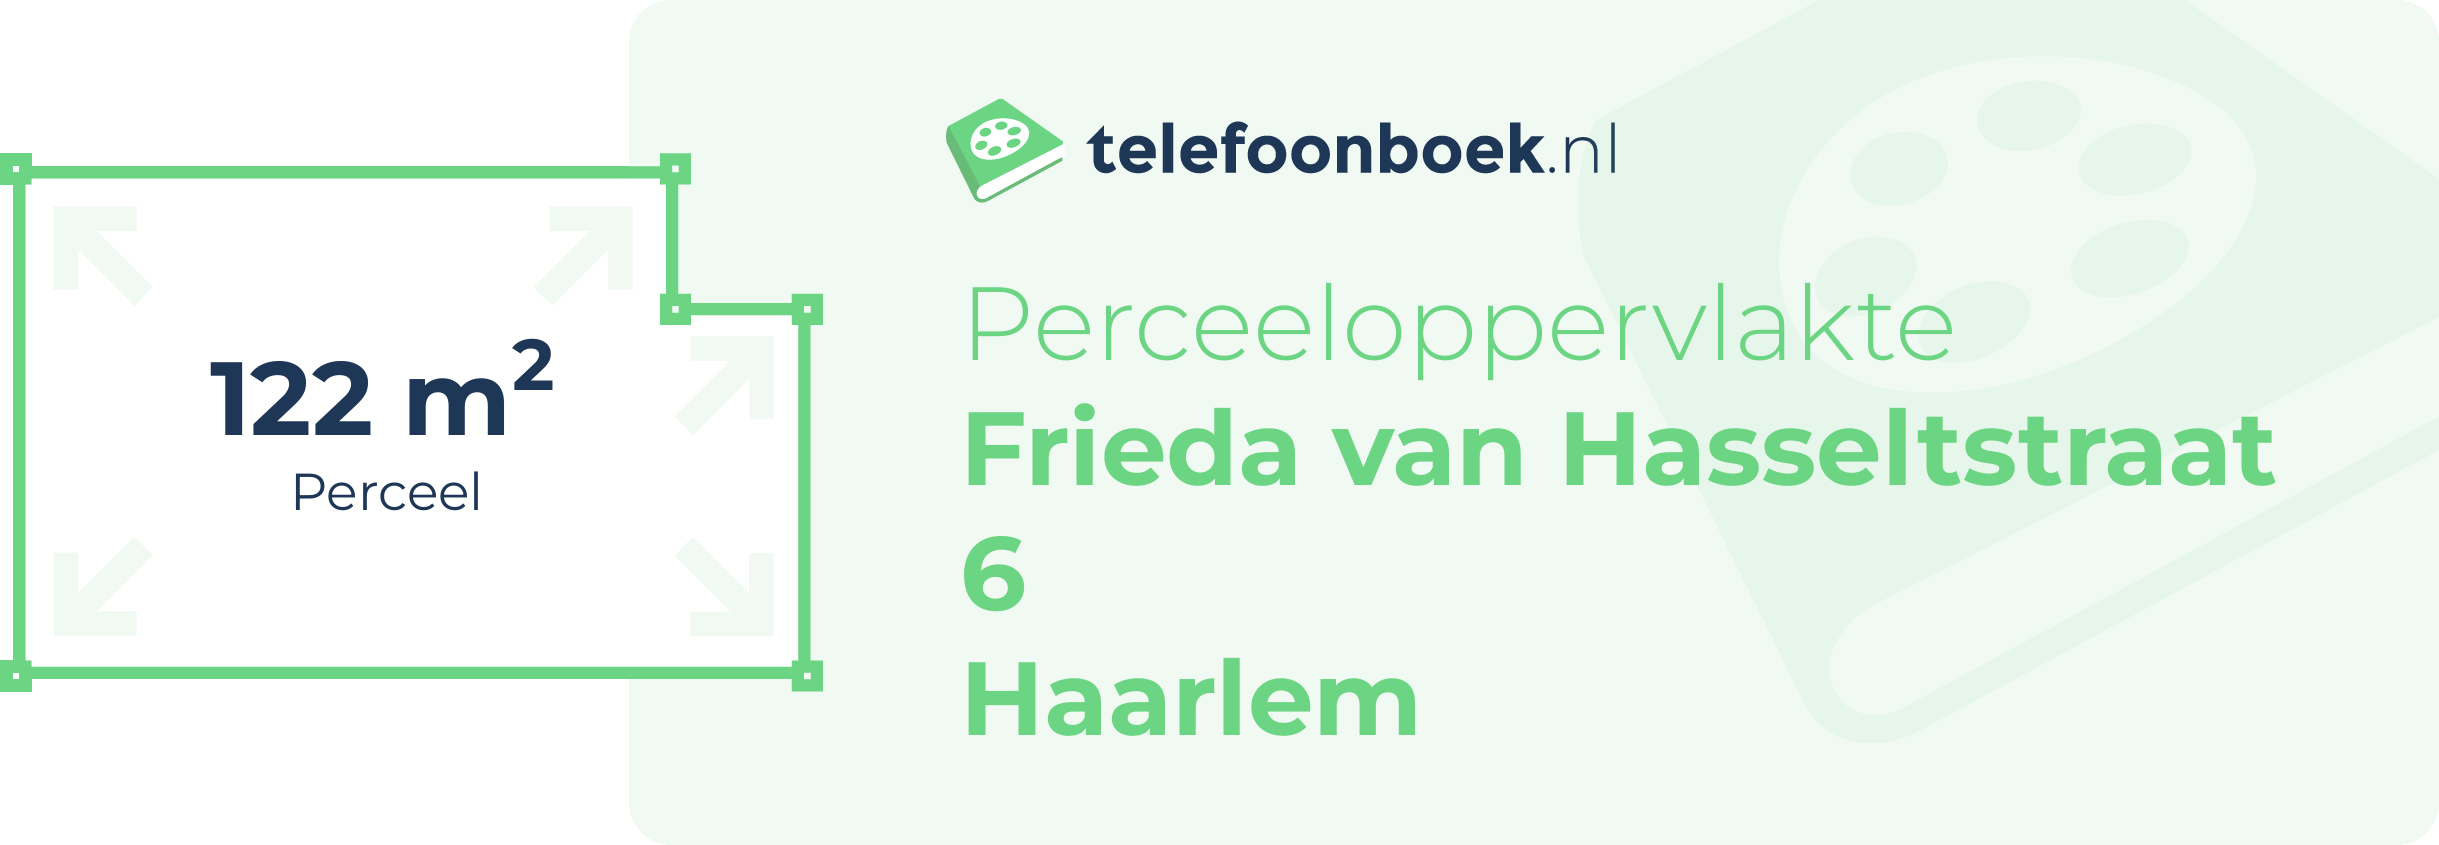 Perceeloppervlakte Frieda Van Hasseltstraat 6 Haarlem